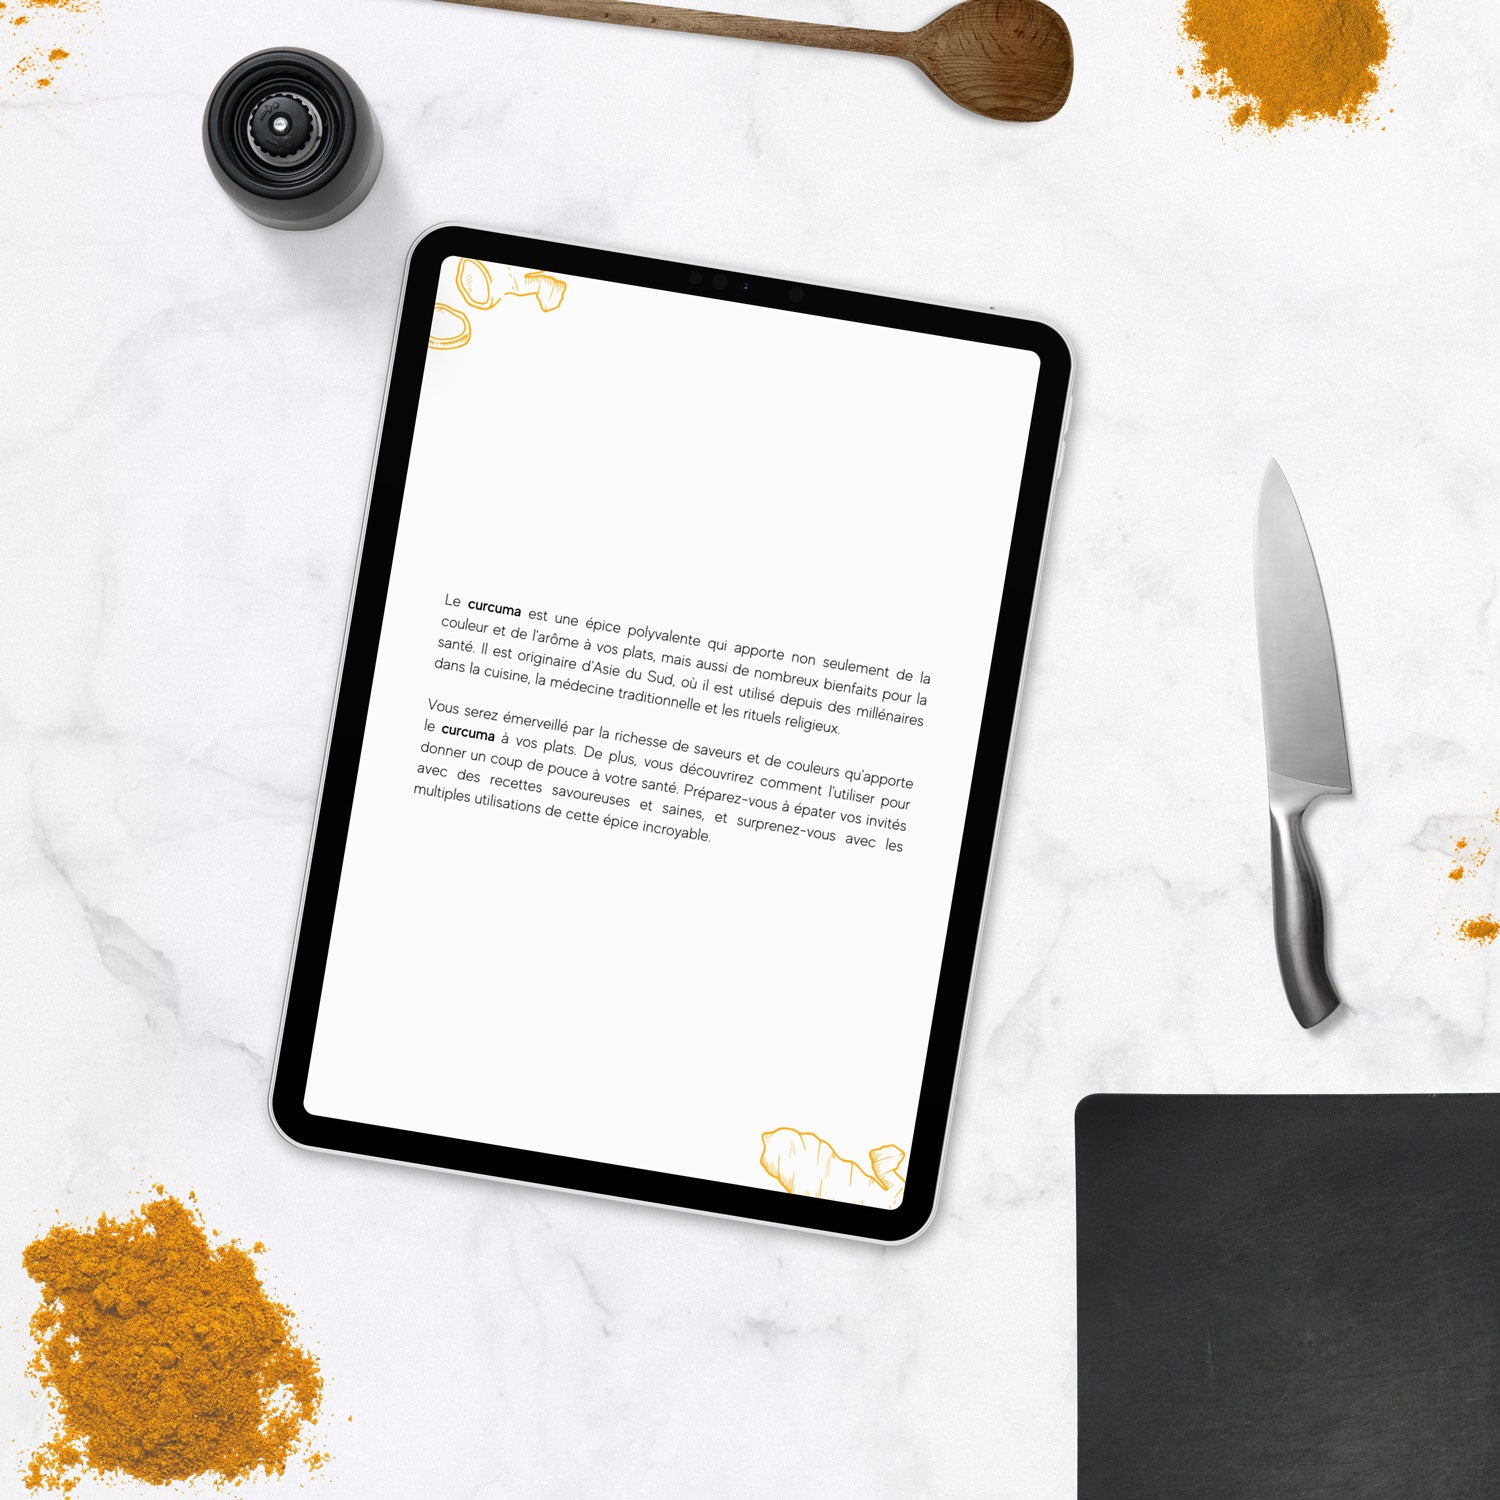 ebook de cuisine sur le curcuma, recette et astuces sur l'utilisation pour les bienfaits au format PDF 